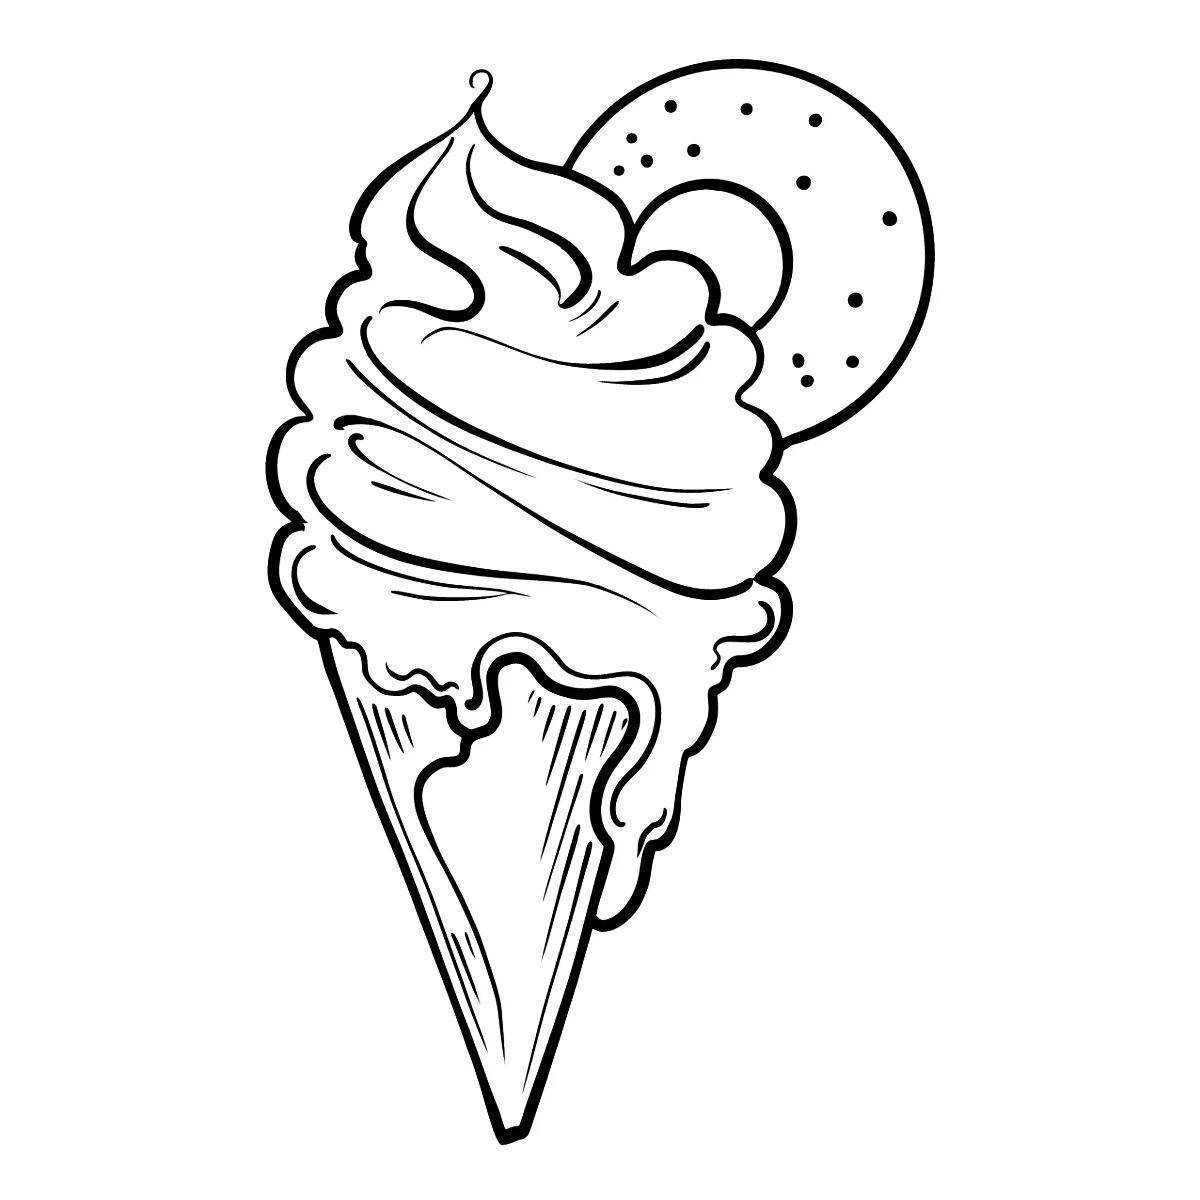 Ice cream cone #2